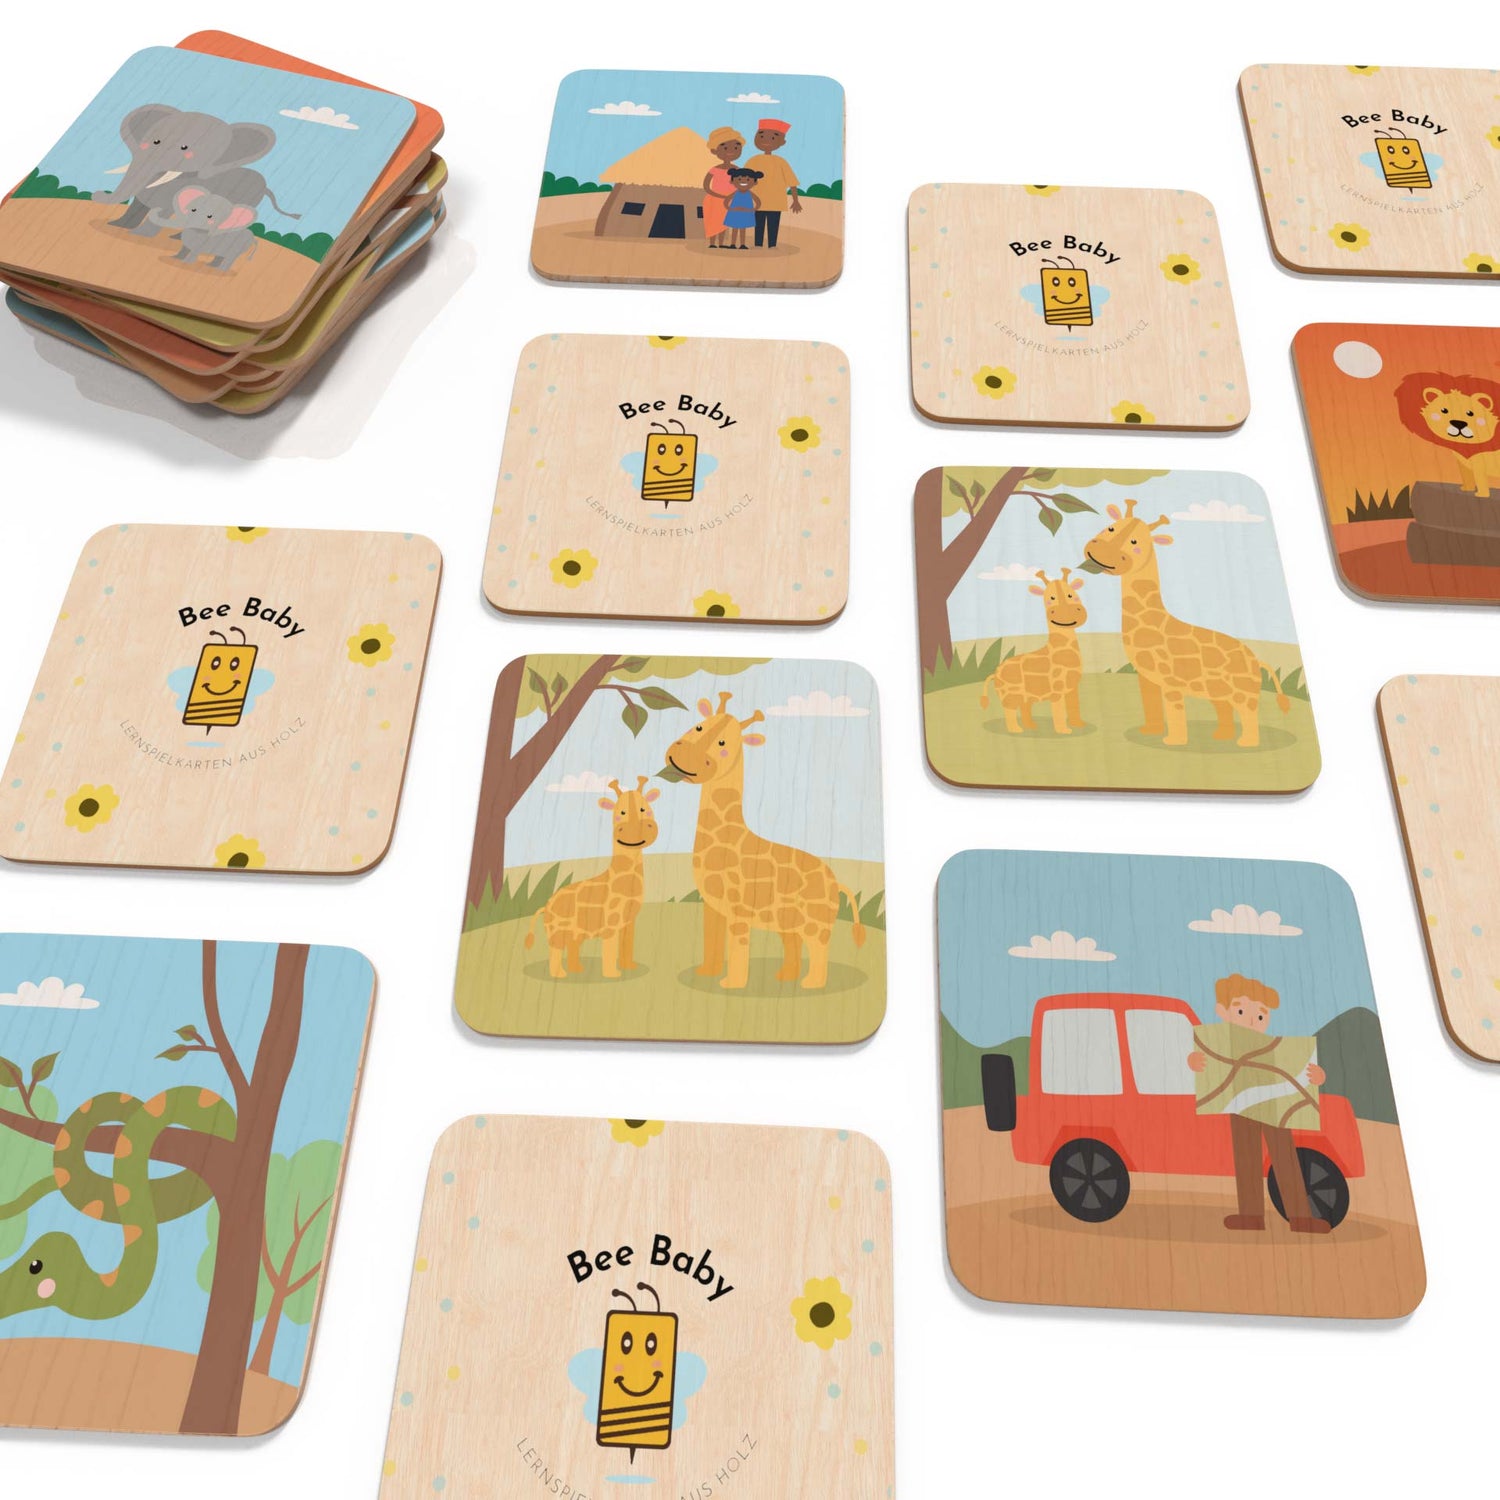 memorykarten mit safarimotiven als set